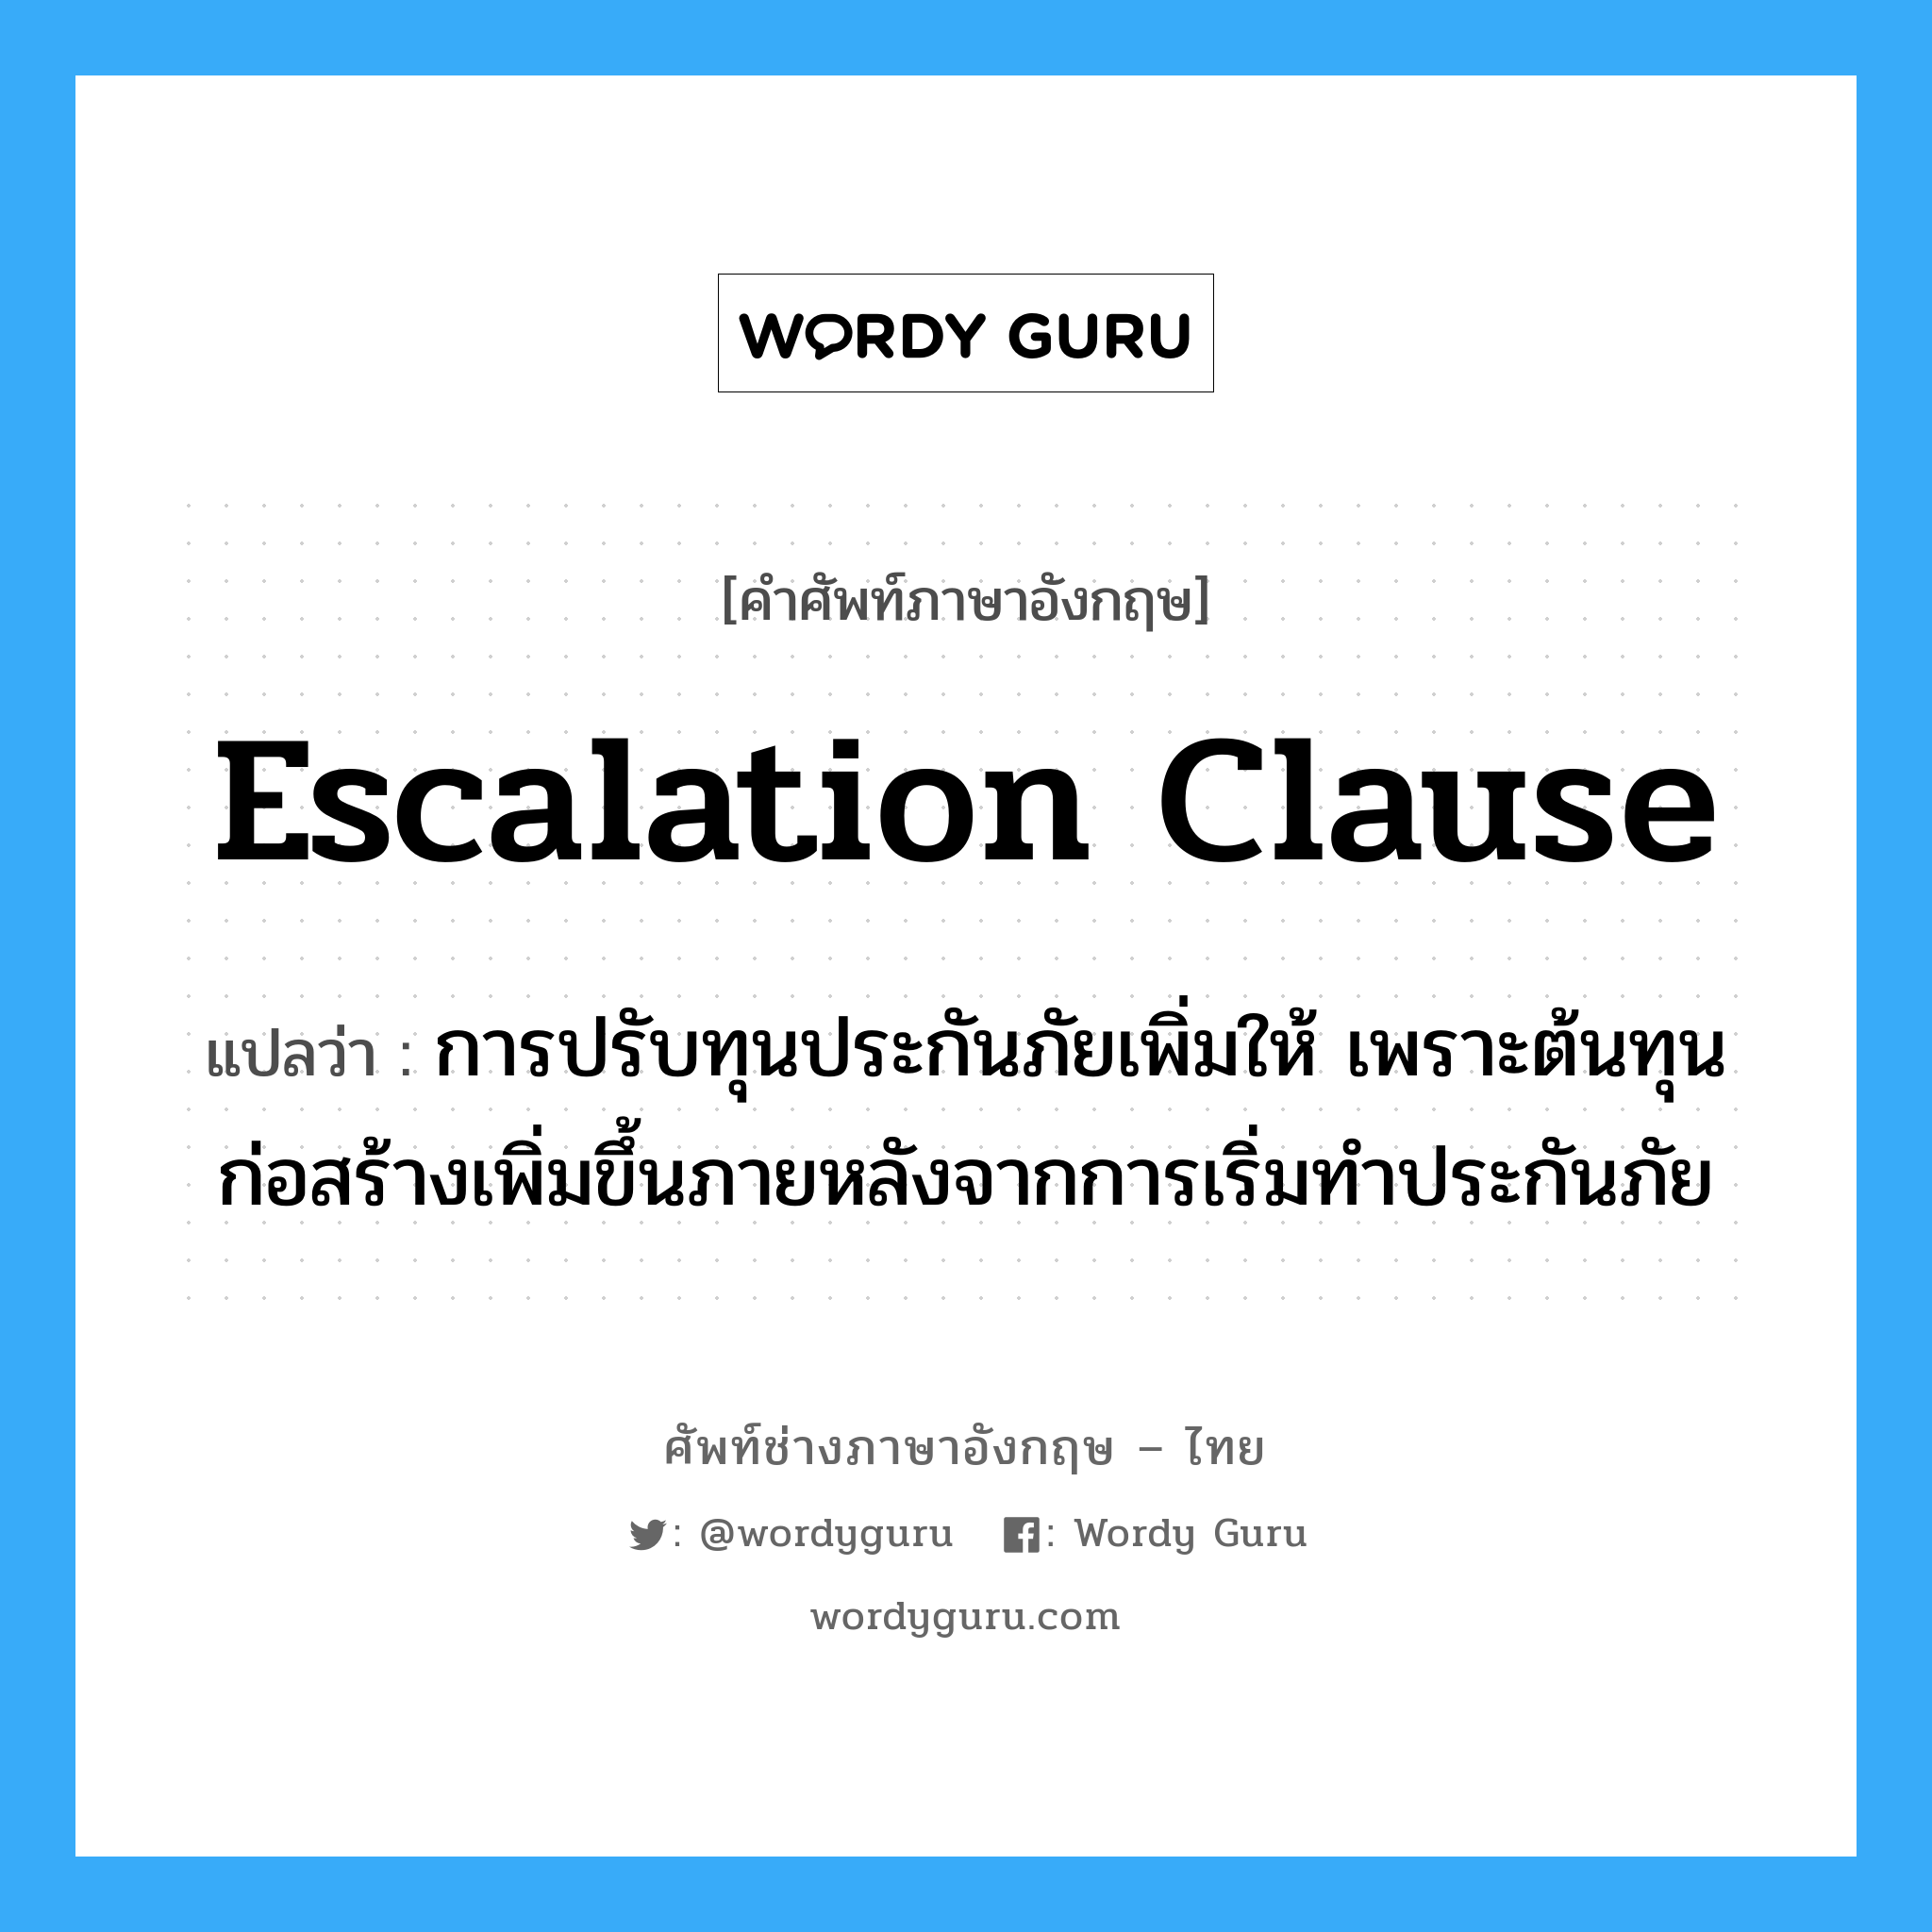 Escalation Clause แปลว่า?, คำศัพท์ช่างภาษาอังกฤษ - ไทย Escalation Clause คำศัพท์ภาษาอังกฤษ Escalation Clause แปลว่า การปรับทุนประกันภัยเพิ่มให้ เพราะต้นทุนก่อสร้างเพิ่มขึ้นภายหลังจากการเริ่มทำประกันภัย